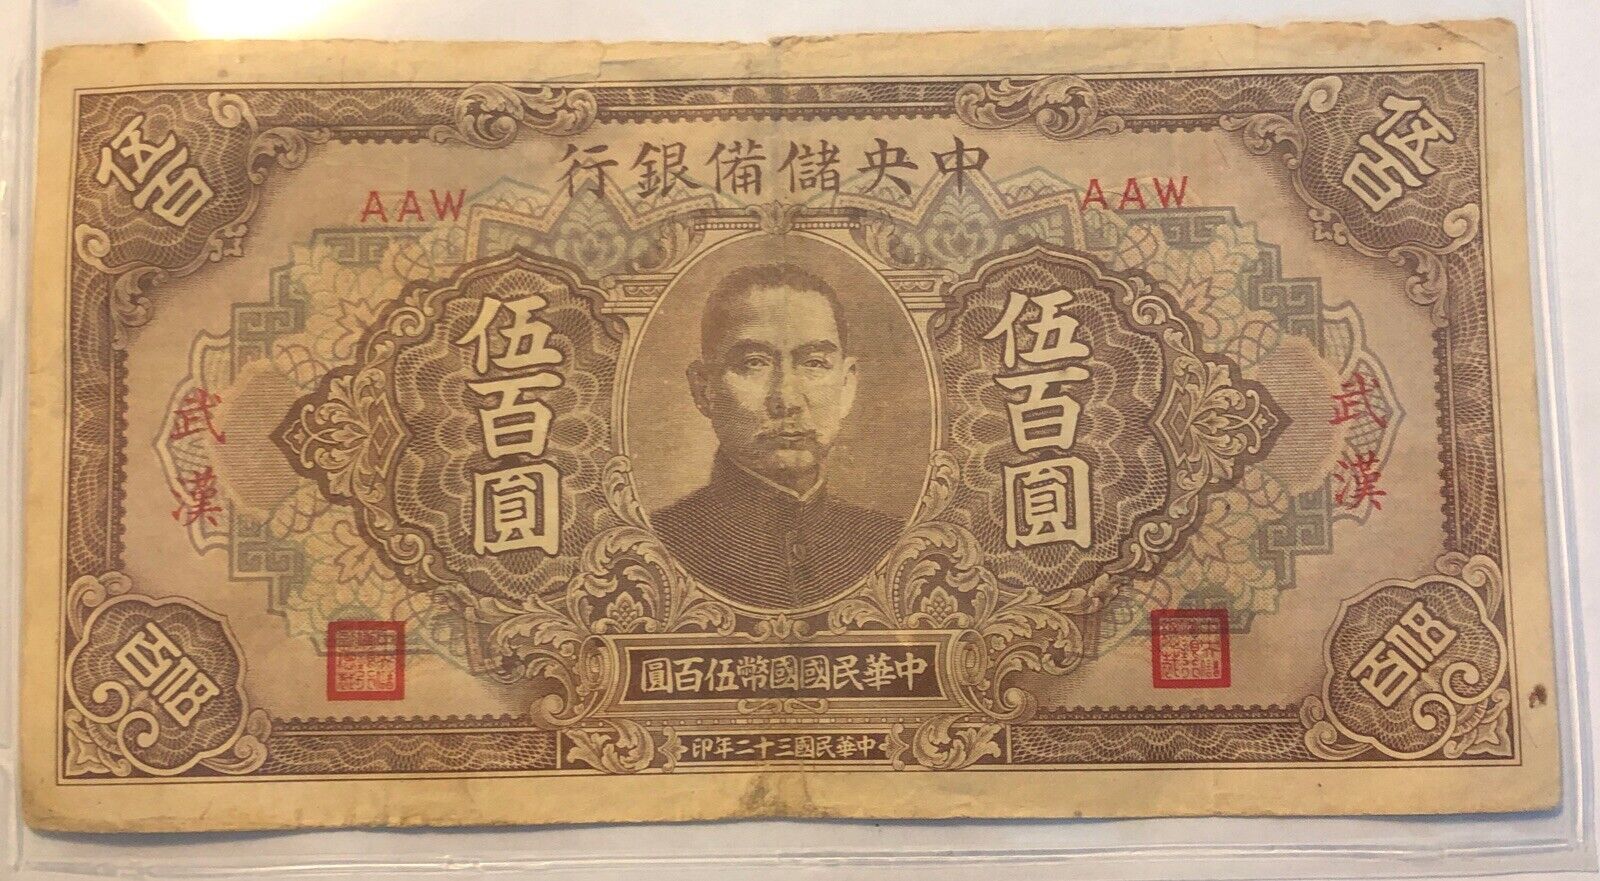 1943 CHINA RESERVE BANK OF CHINA 500 YUAN BANKNOTE PICK#24b.